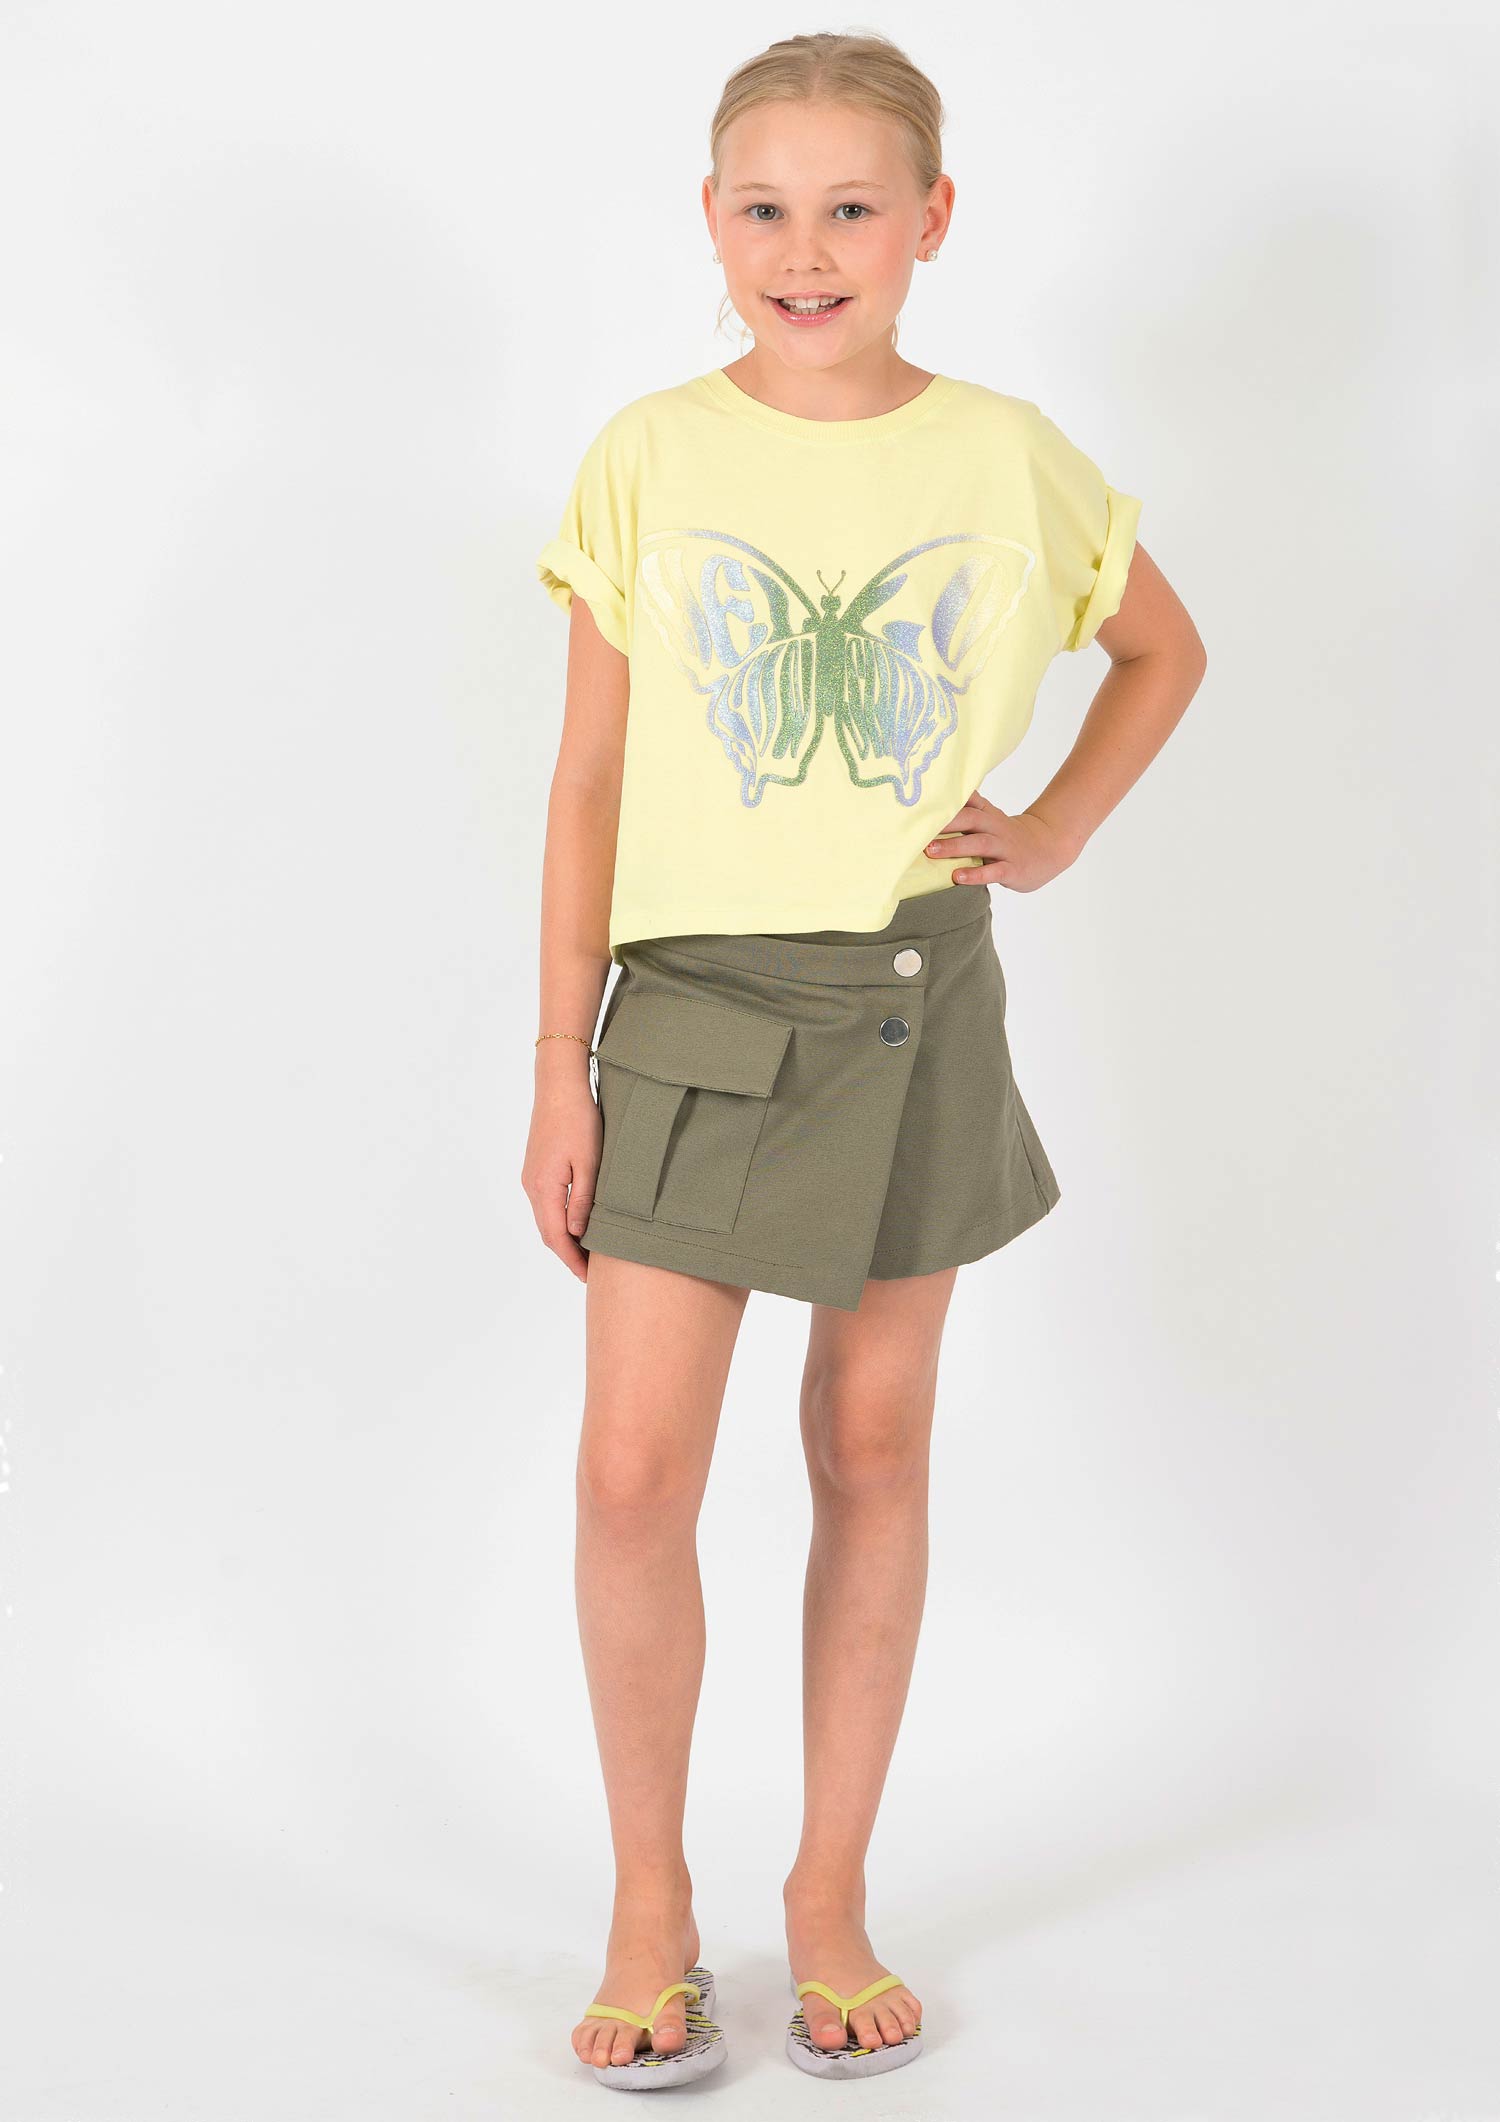 5959-Girls T-Shirt -Butterfly